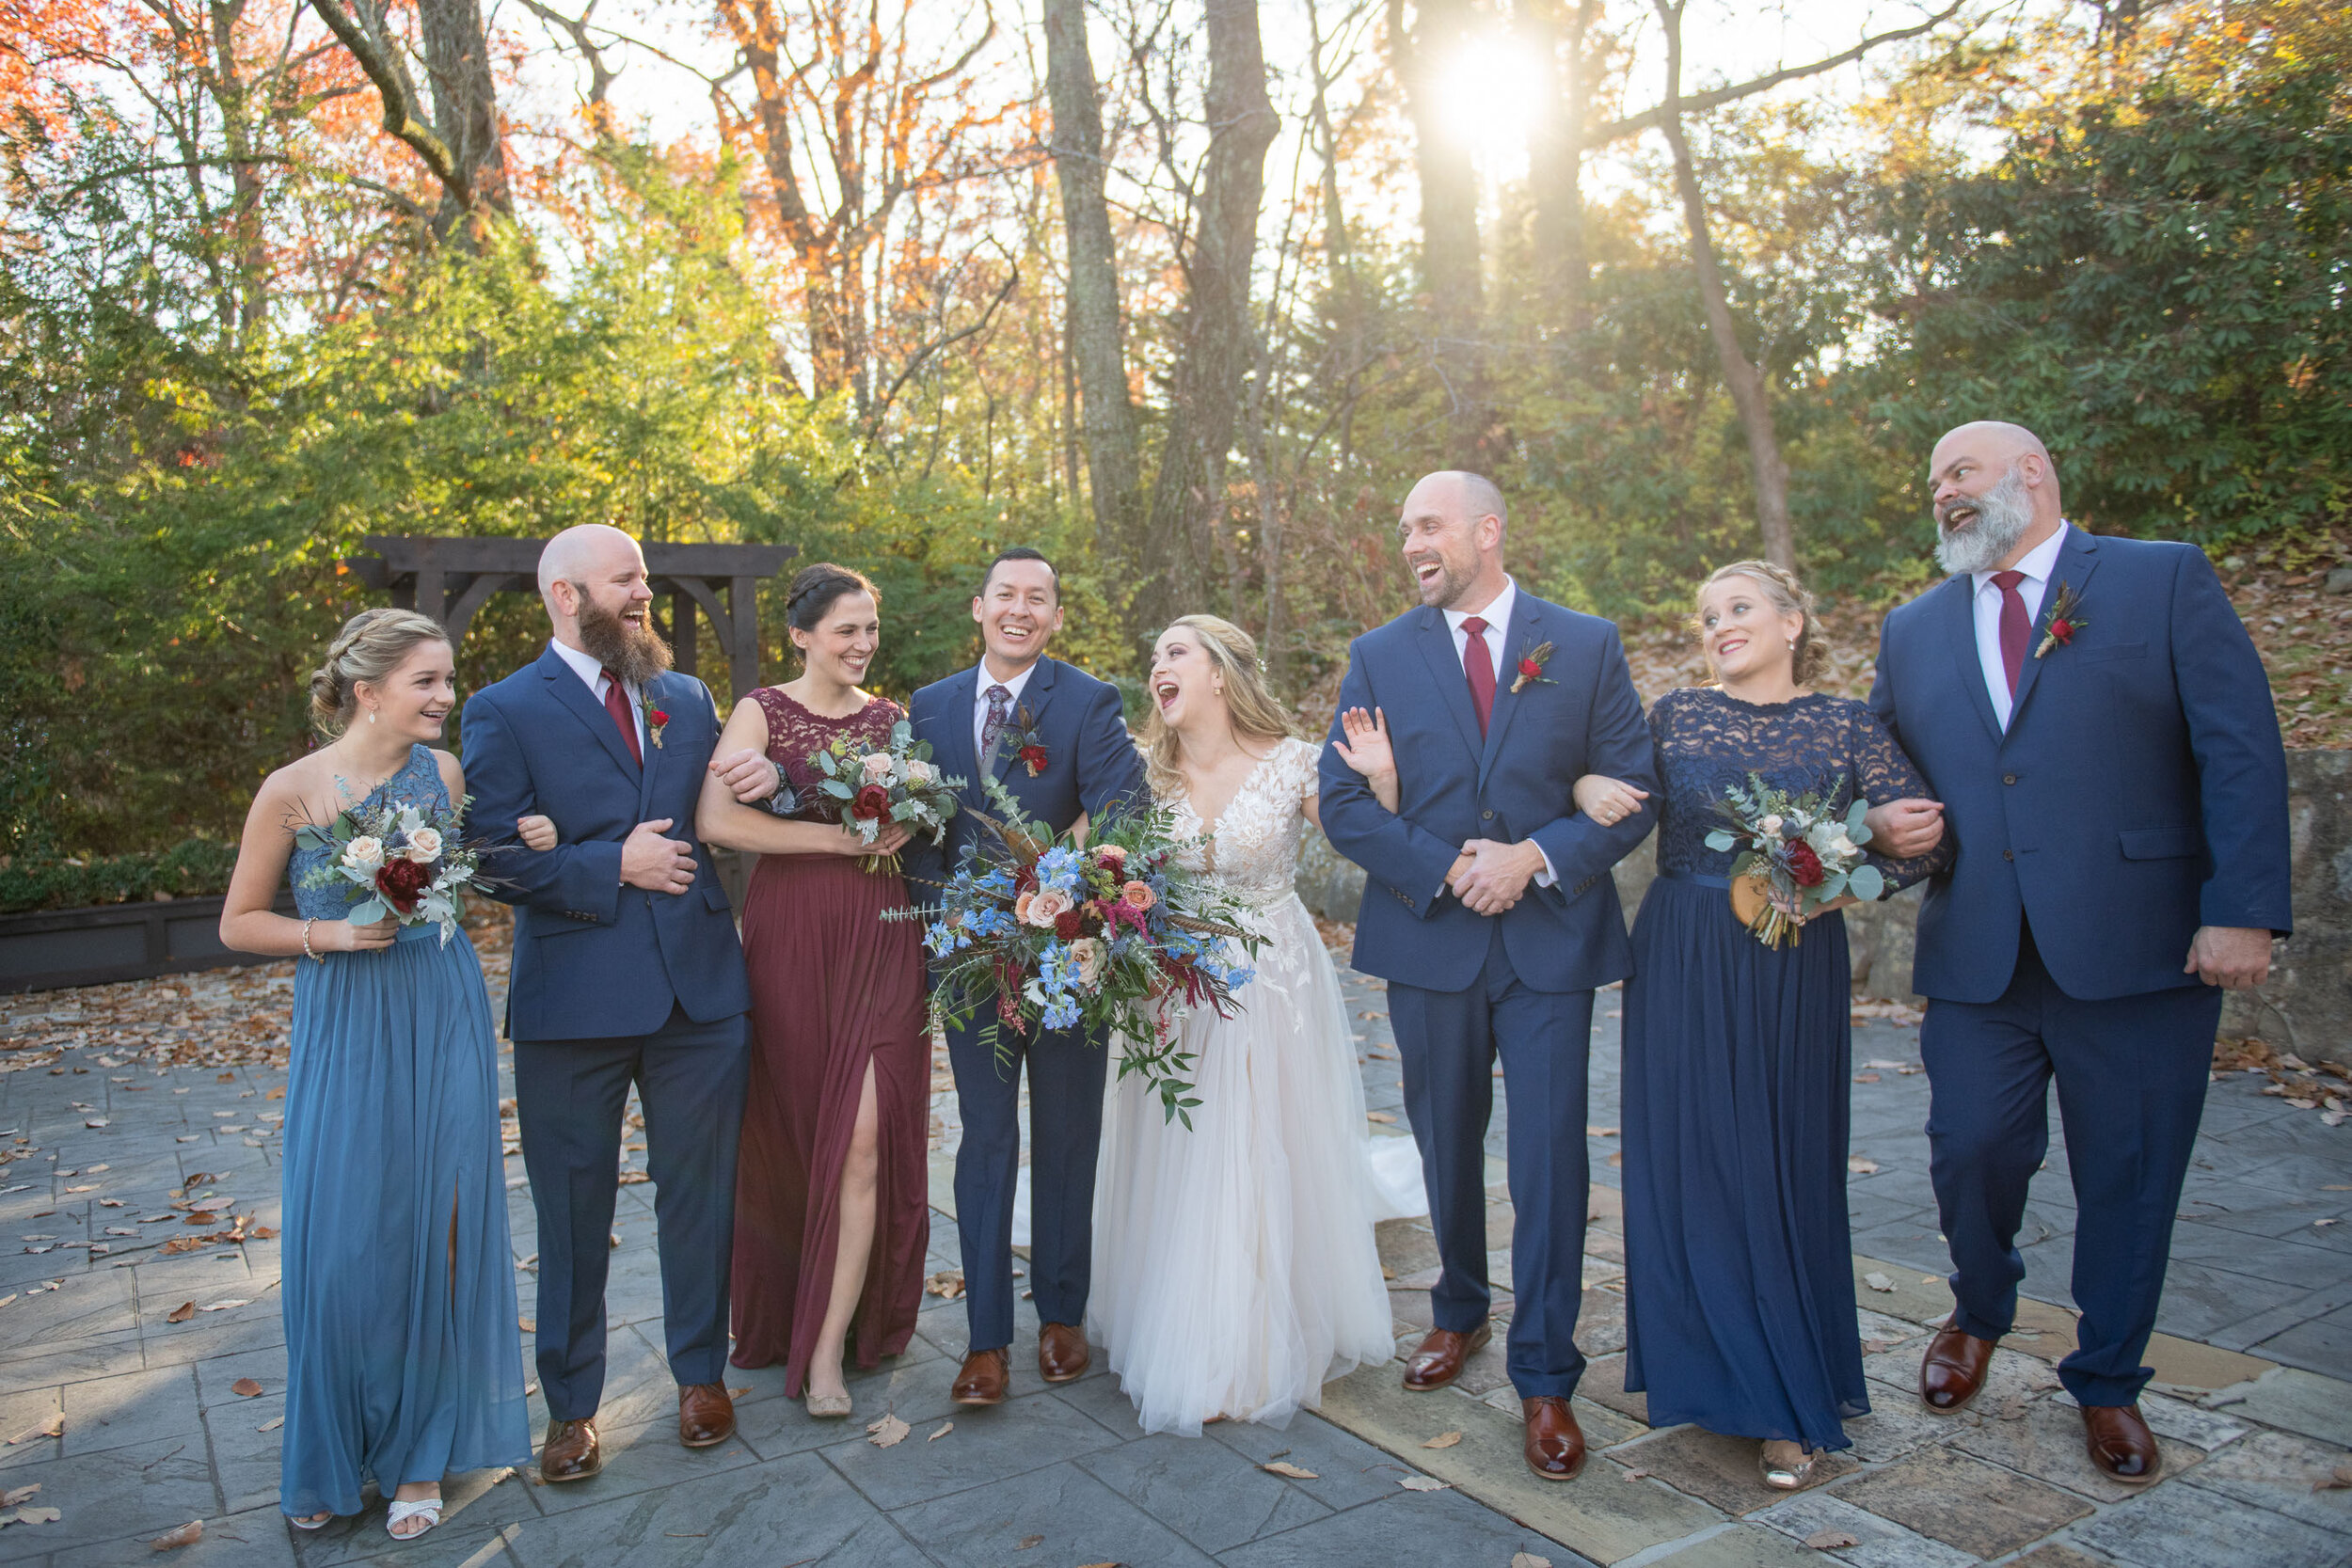 Chattanooga-Wedding-Photography-14.jpg